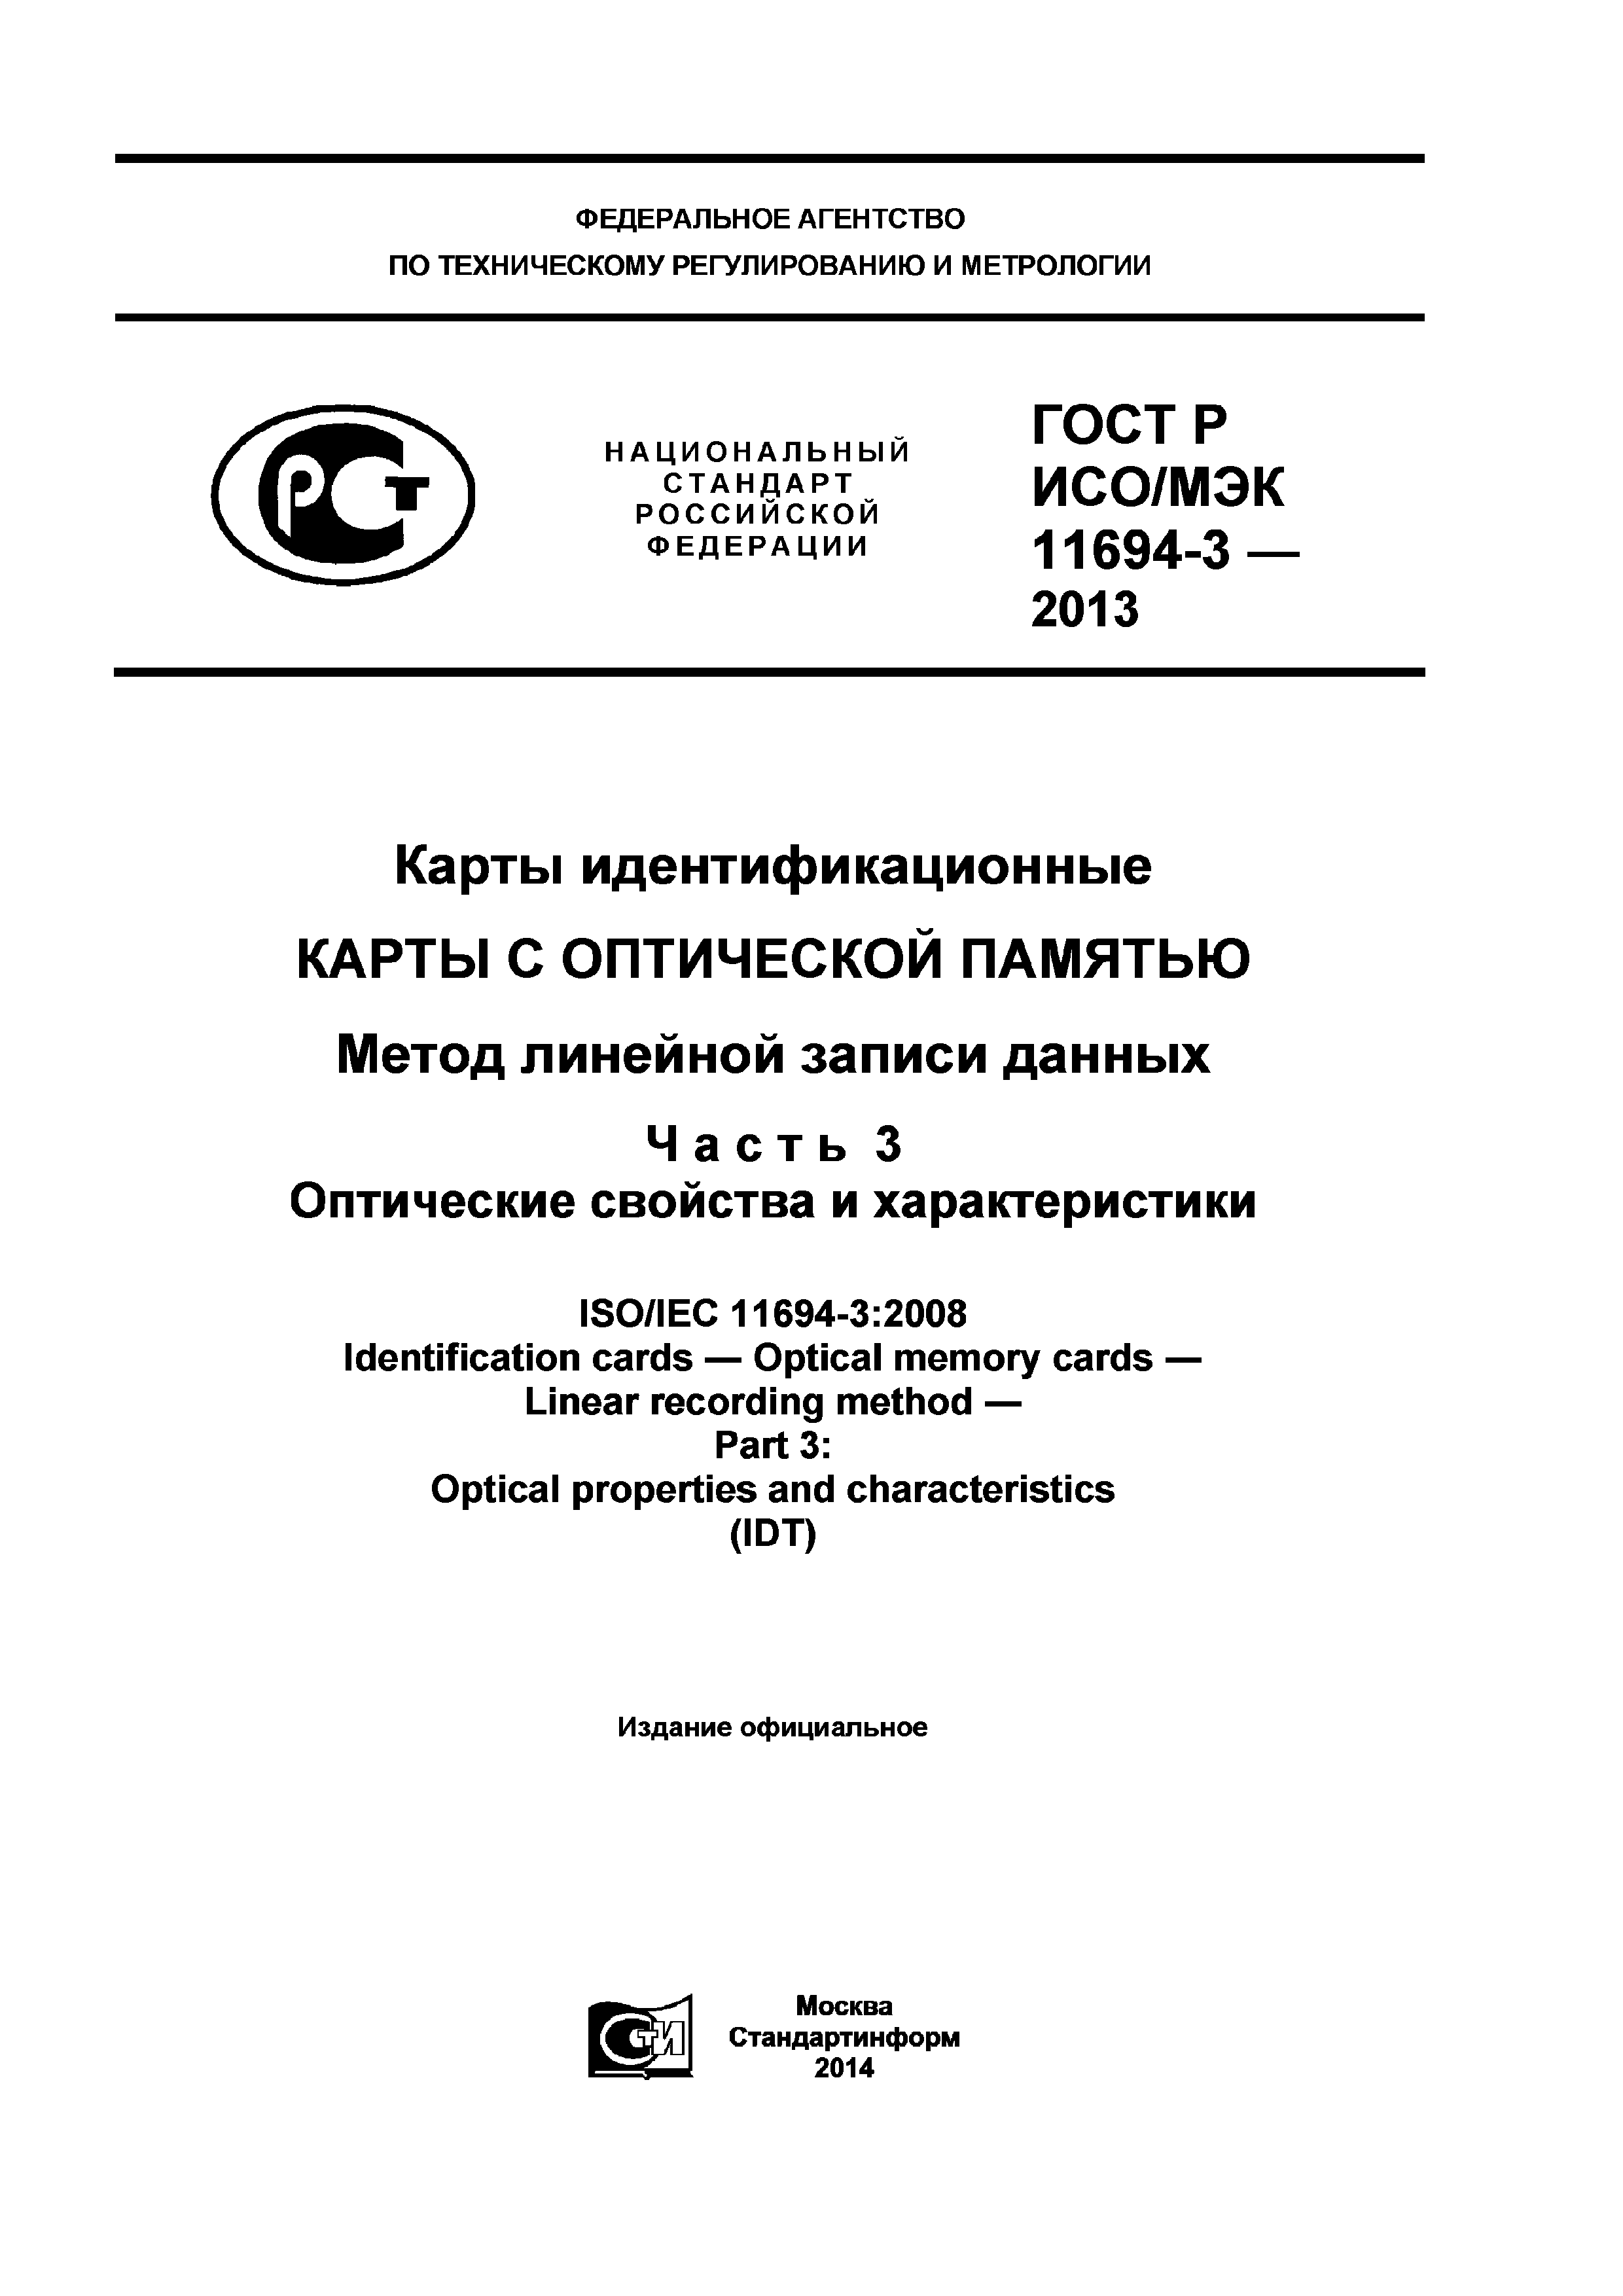 ГОСТ Р ИСО/МЭК 11694-3-2013